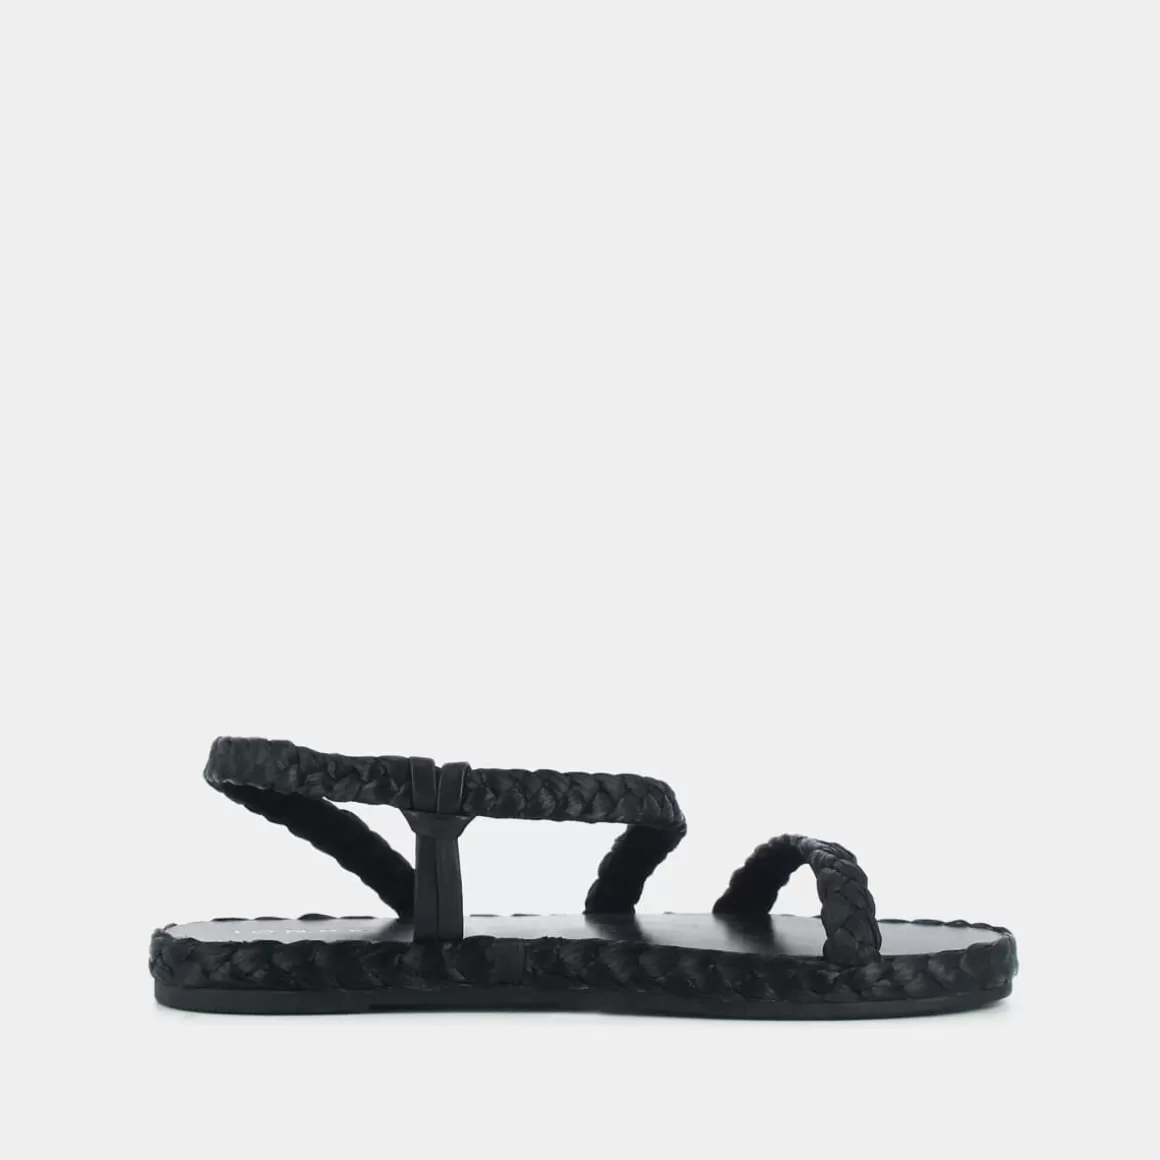 Asymmetrical strappy sandals<Jonak Shop